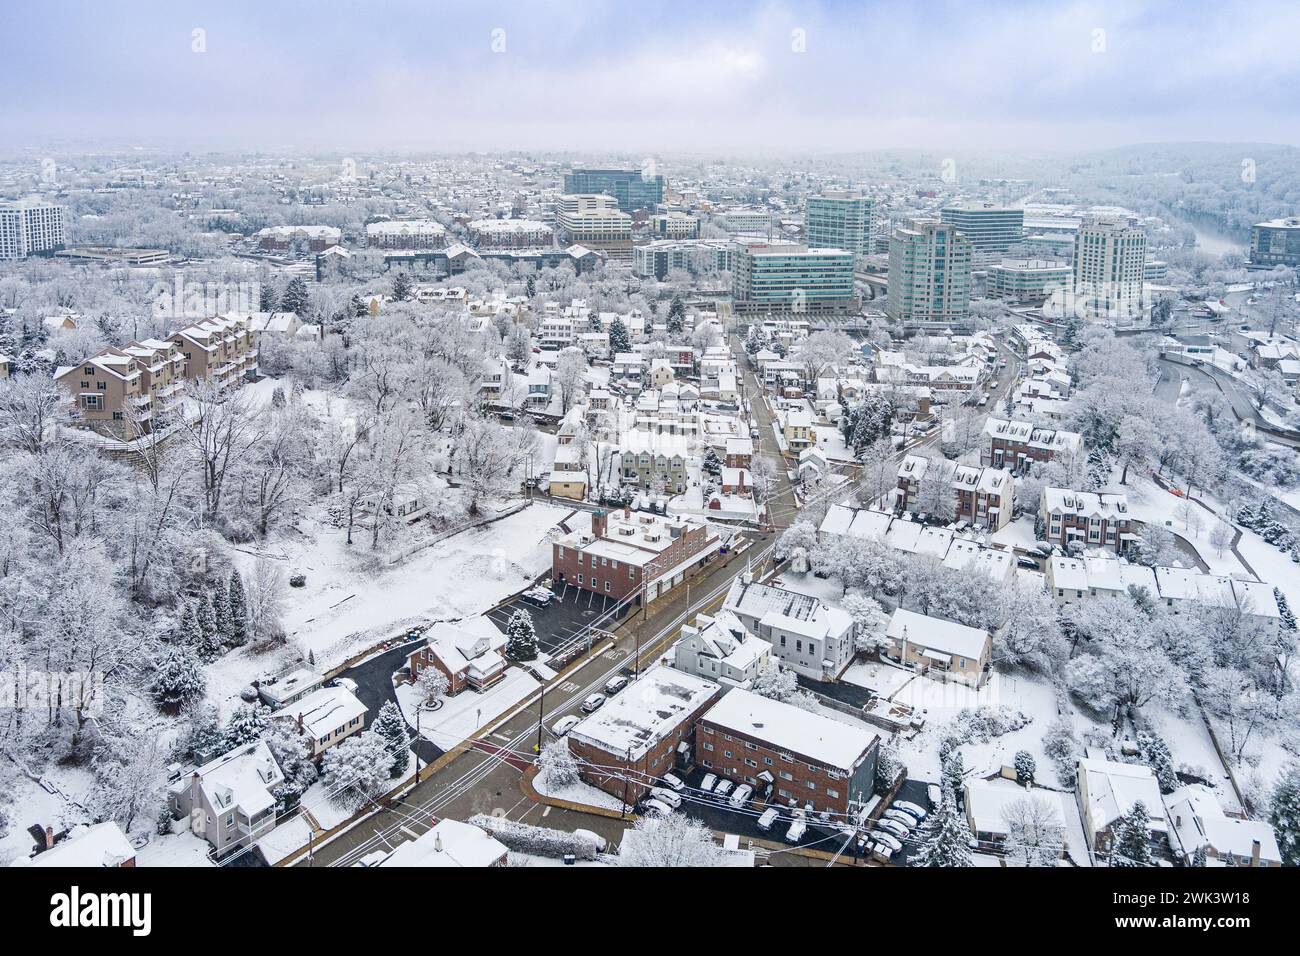 Vue aérienne de Conshohocken Pennsylvanie pendant l'hiver avec de la neige sur le sol. Banque D'Images